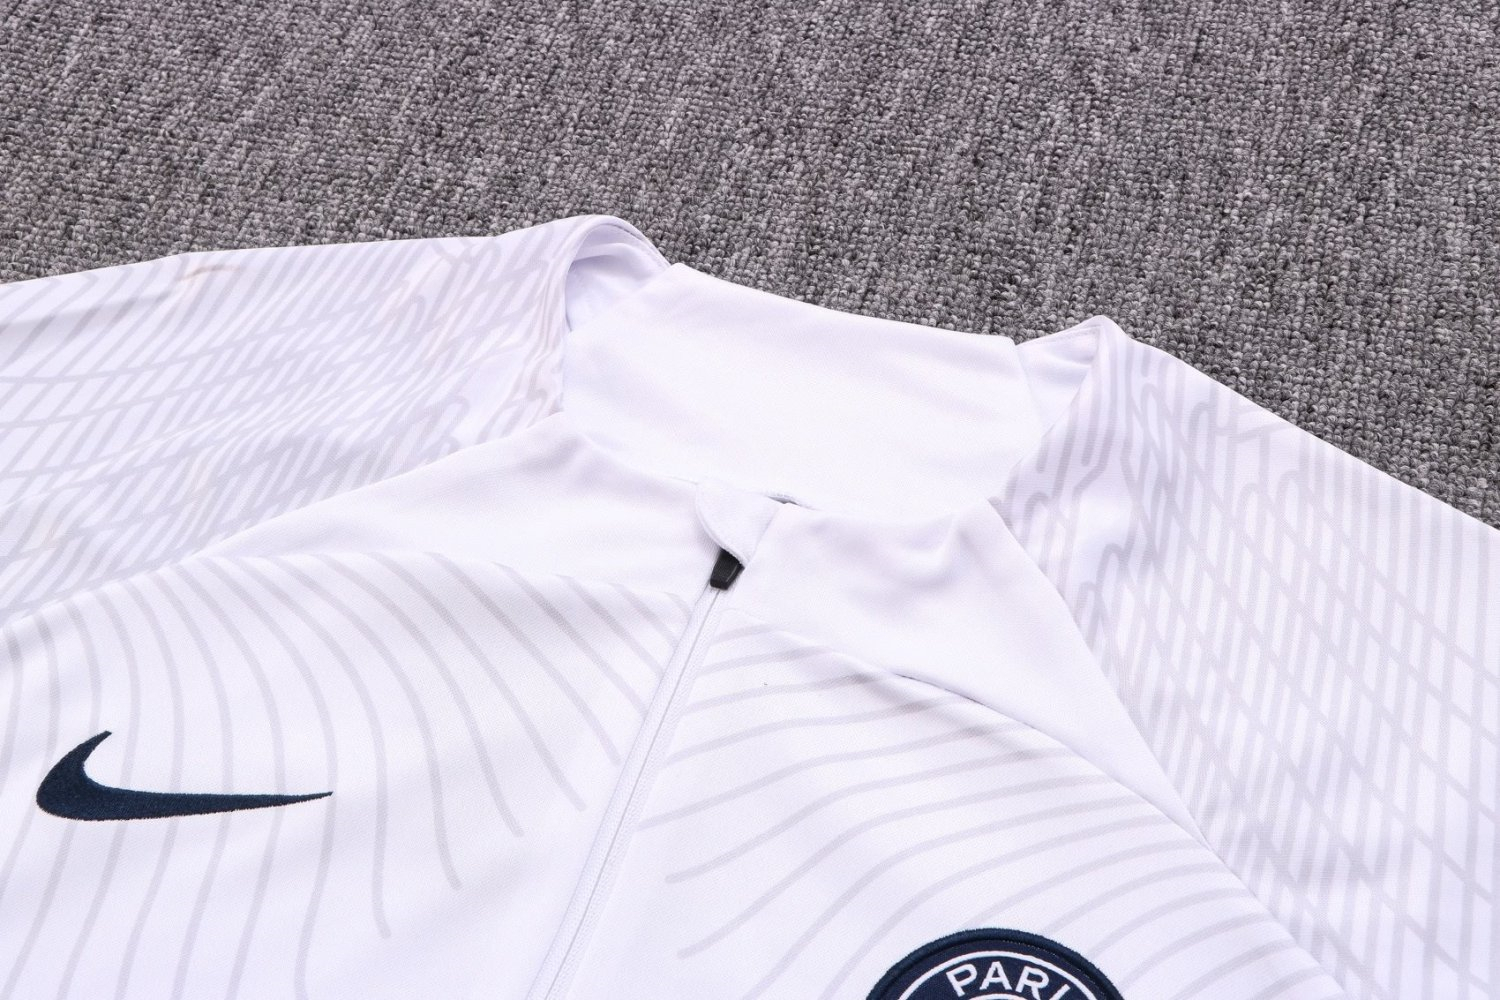 PSG Soccer Training Suit White 3D Print 2022/23 Mens